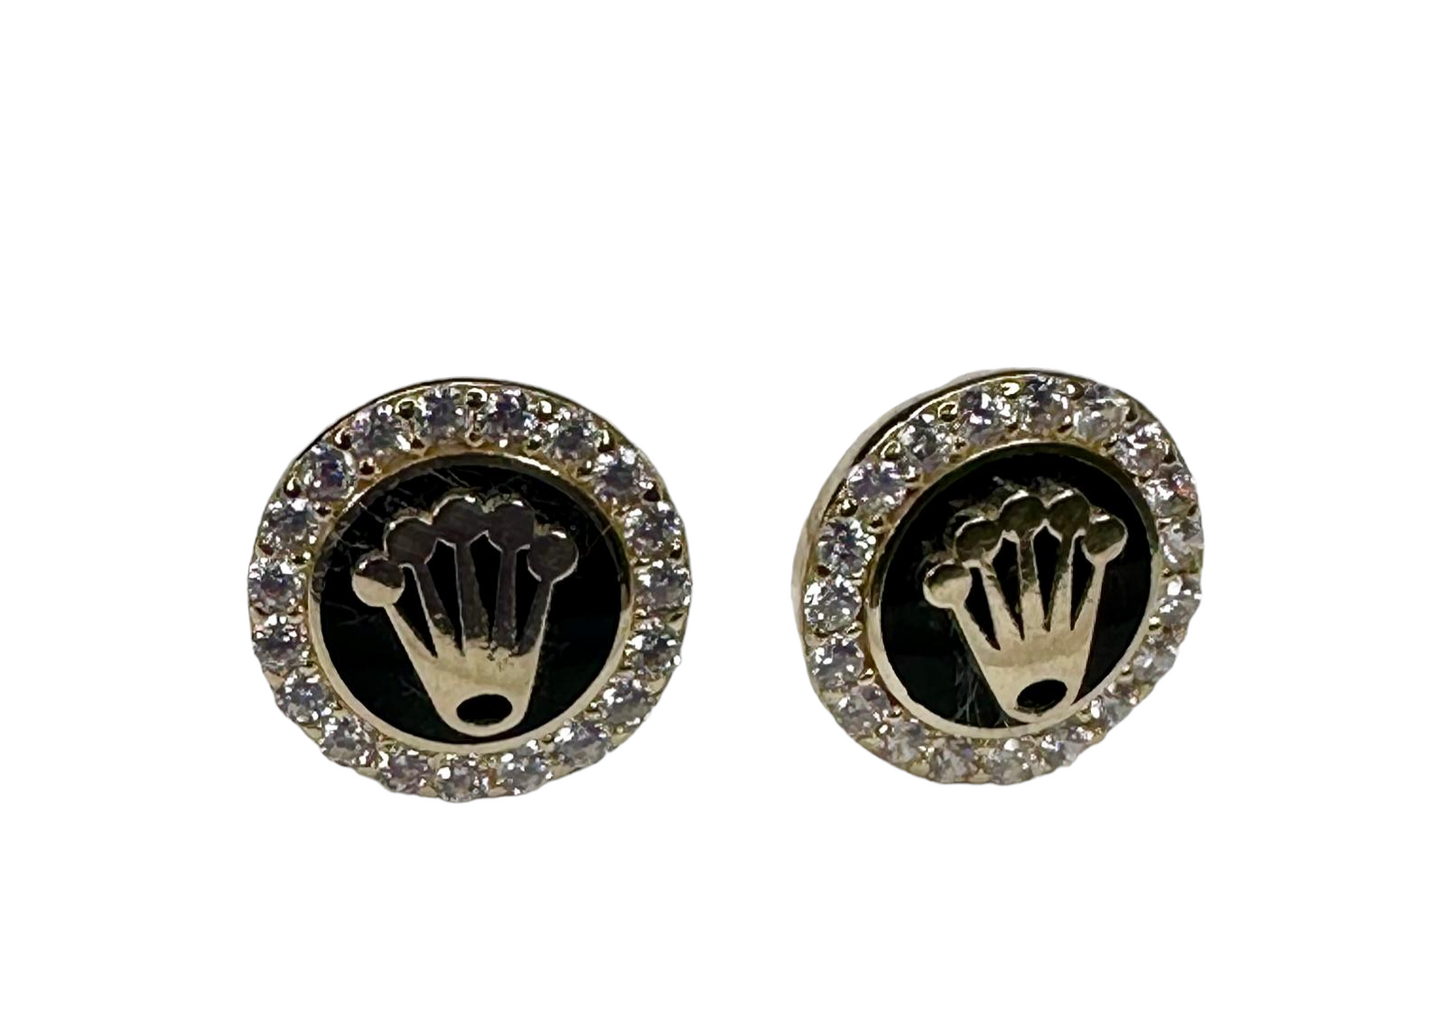 Style Rolex earrings